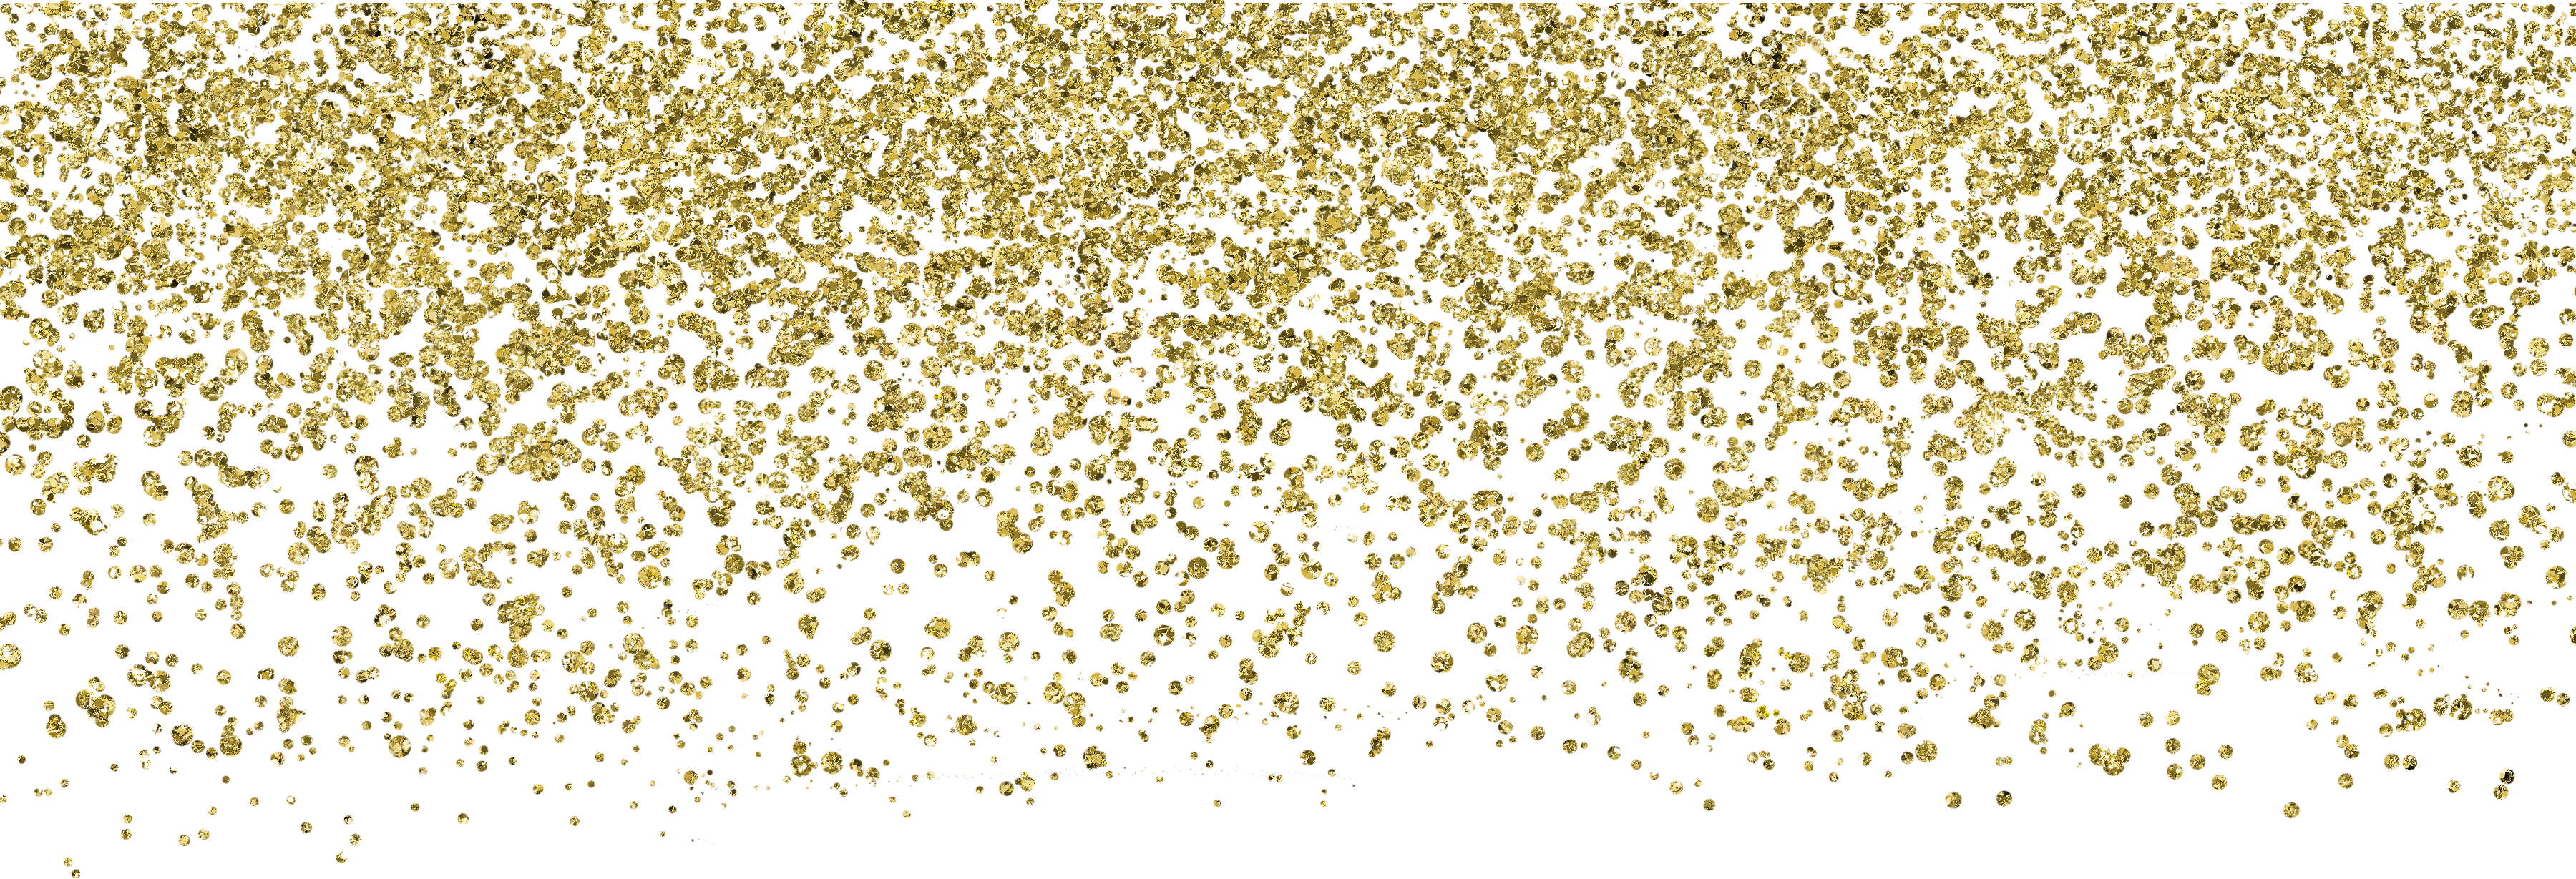 Shine Gold Wedding Paper Powder,Sequins Invitation Confetti Clipart